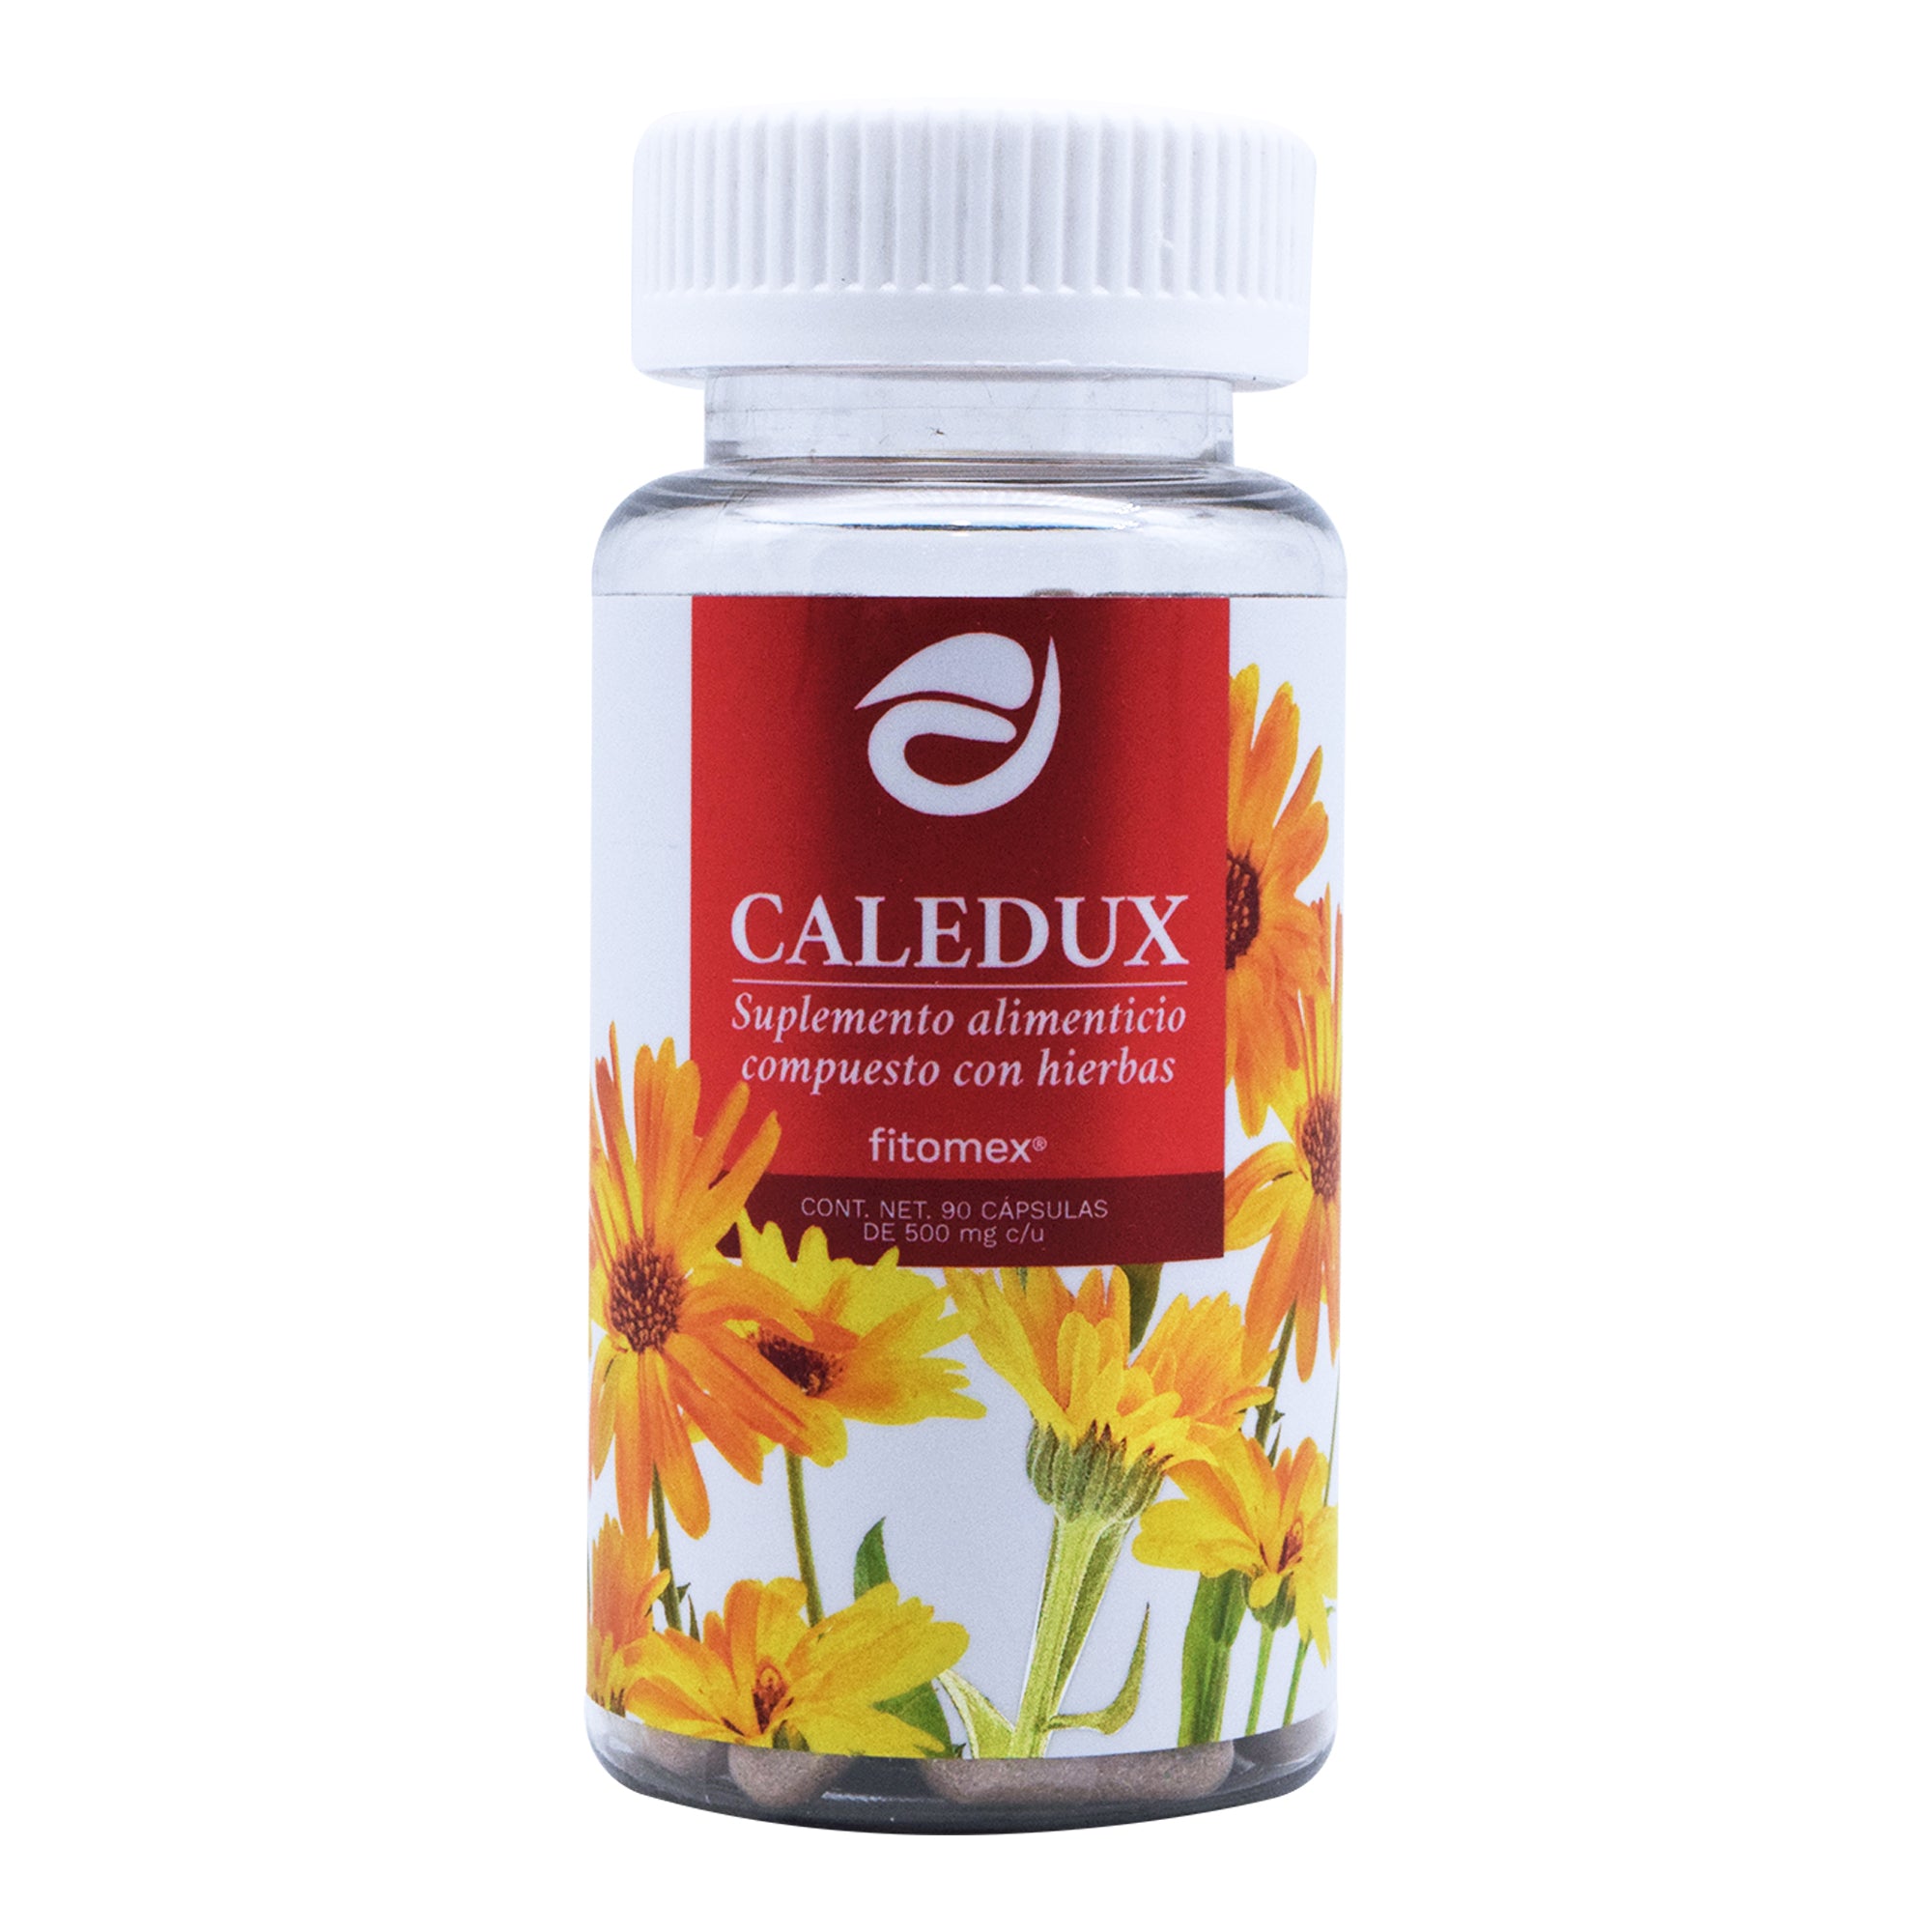 Caledux 500 mg 90 cap